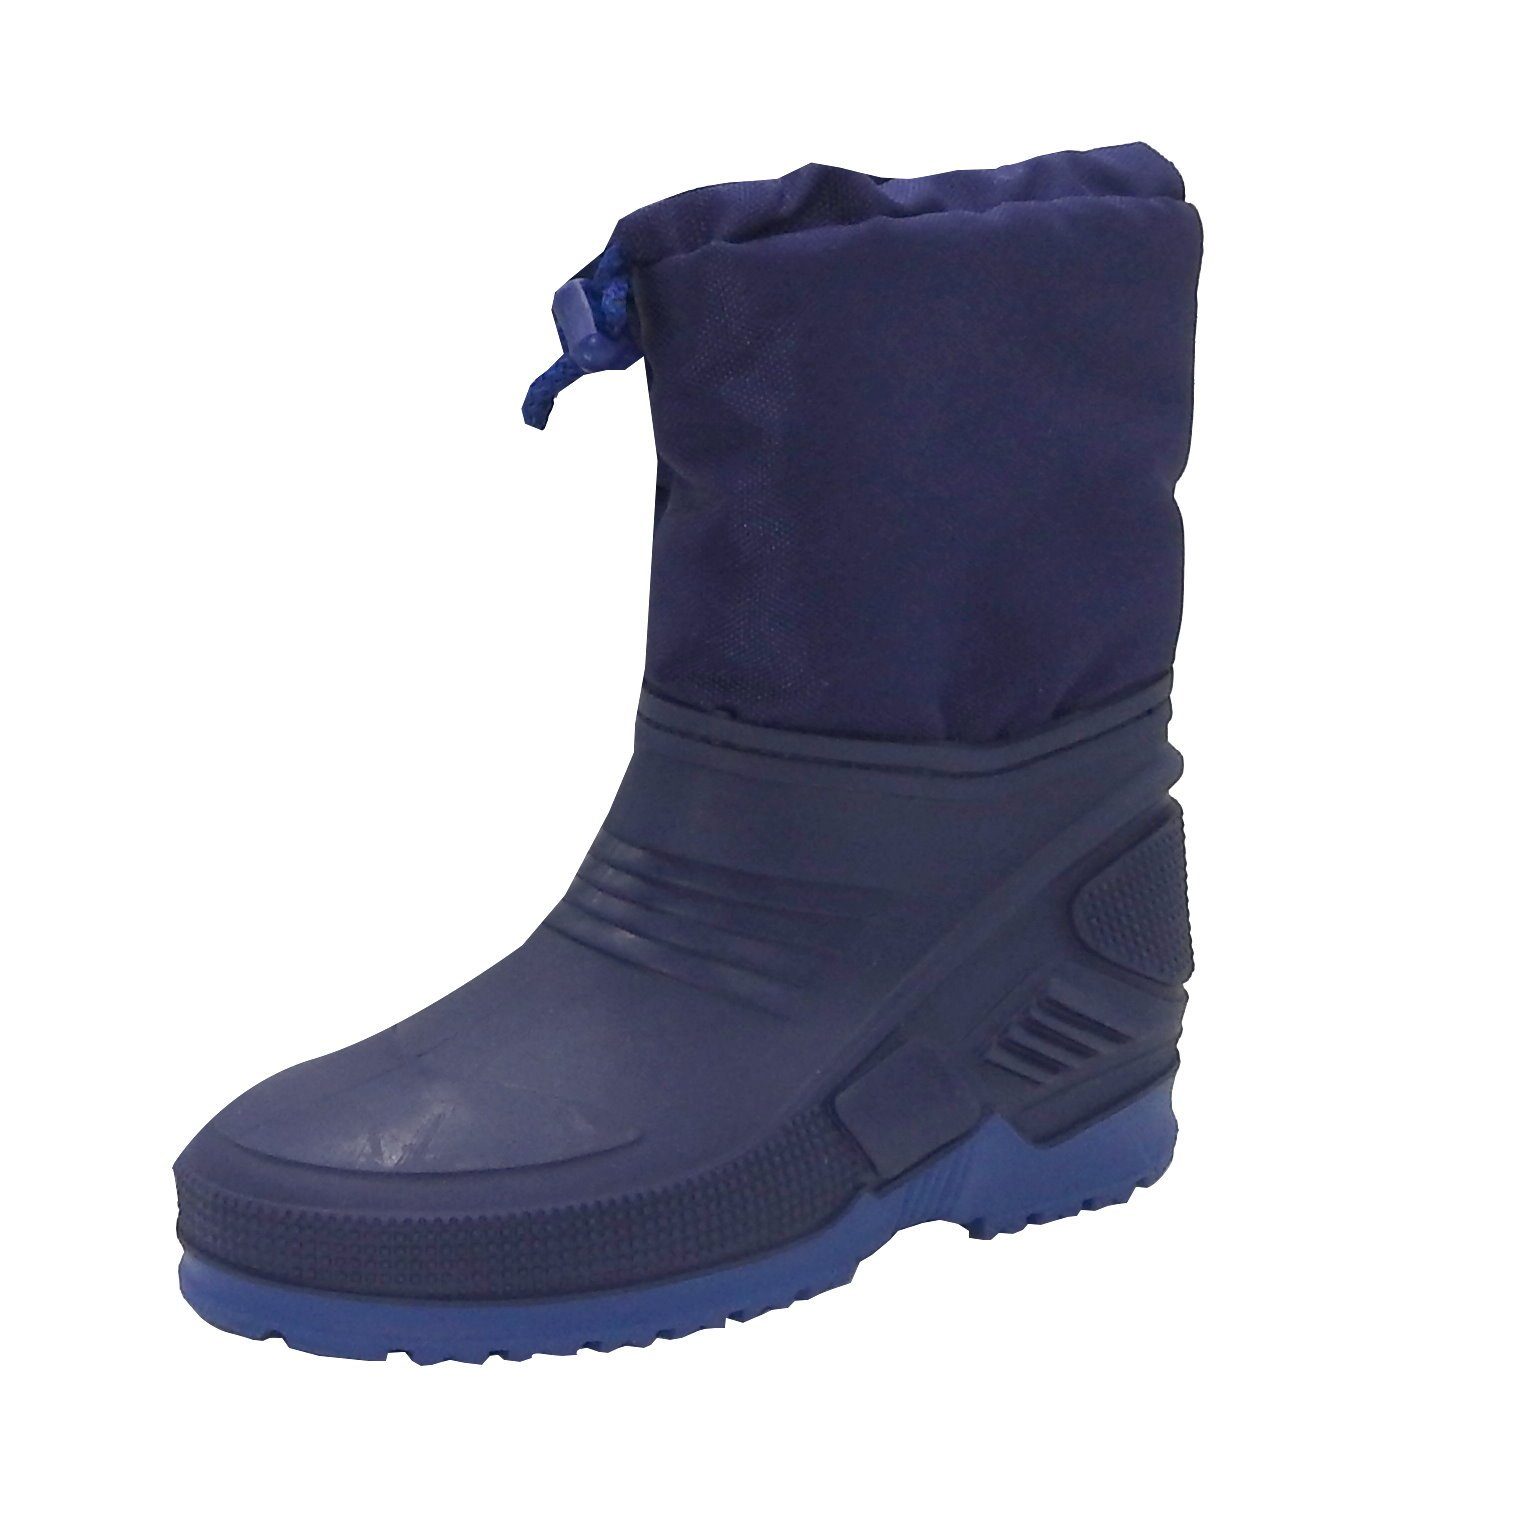 dynamic24 Snowboots Kinder Gr. 29/30 Winter Schnee Stiefel Jungen Mädchen  Schuhe Boots blau online kaufen | OTTO